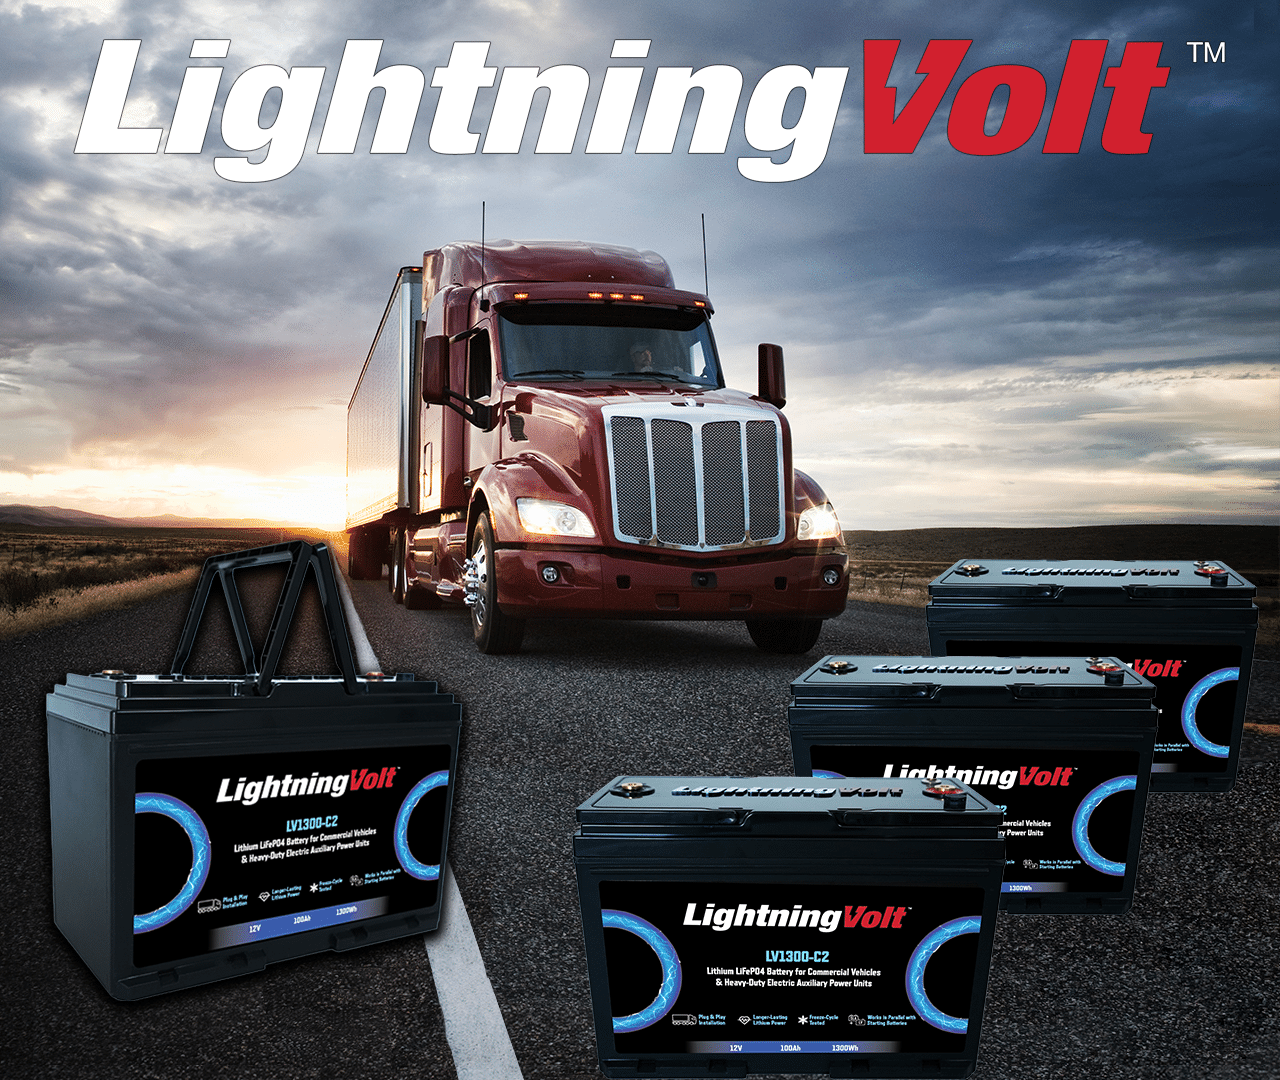 LightningVolt DC-DC Lithium Battery Charger & Isolator - Roadwarrior